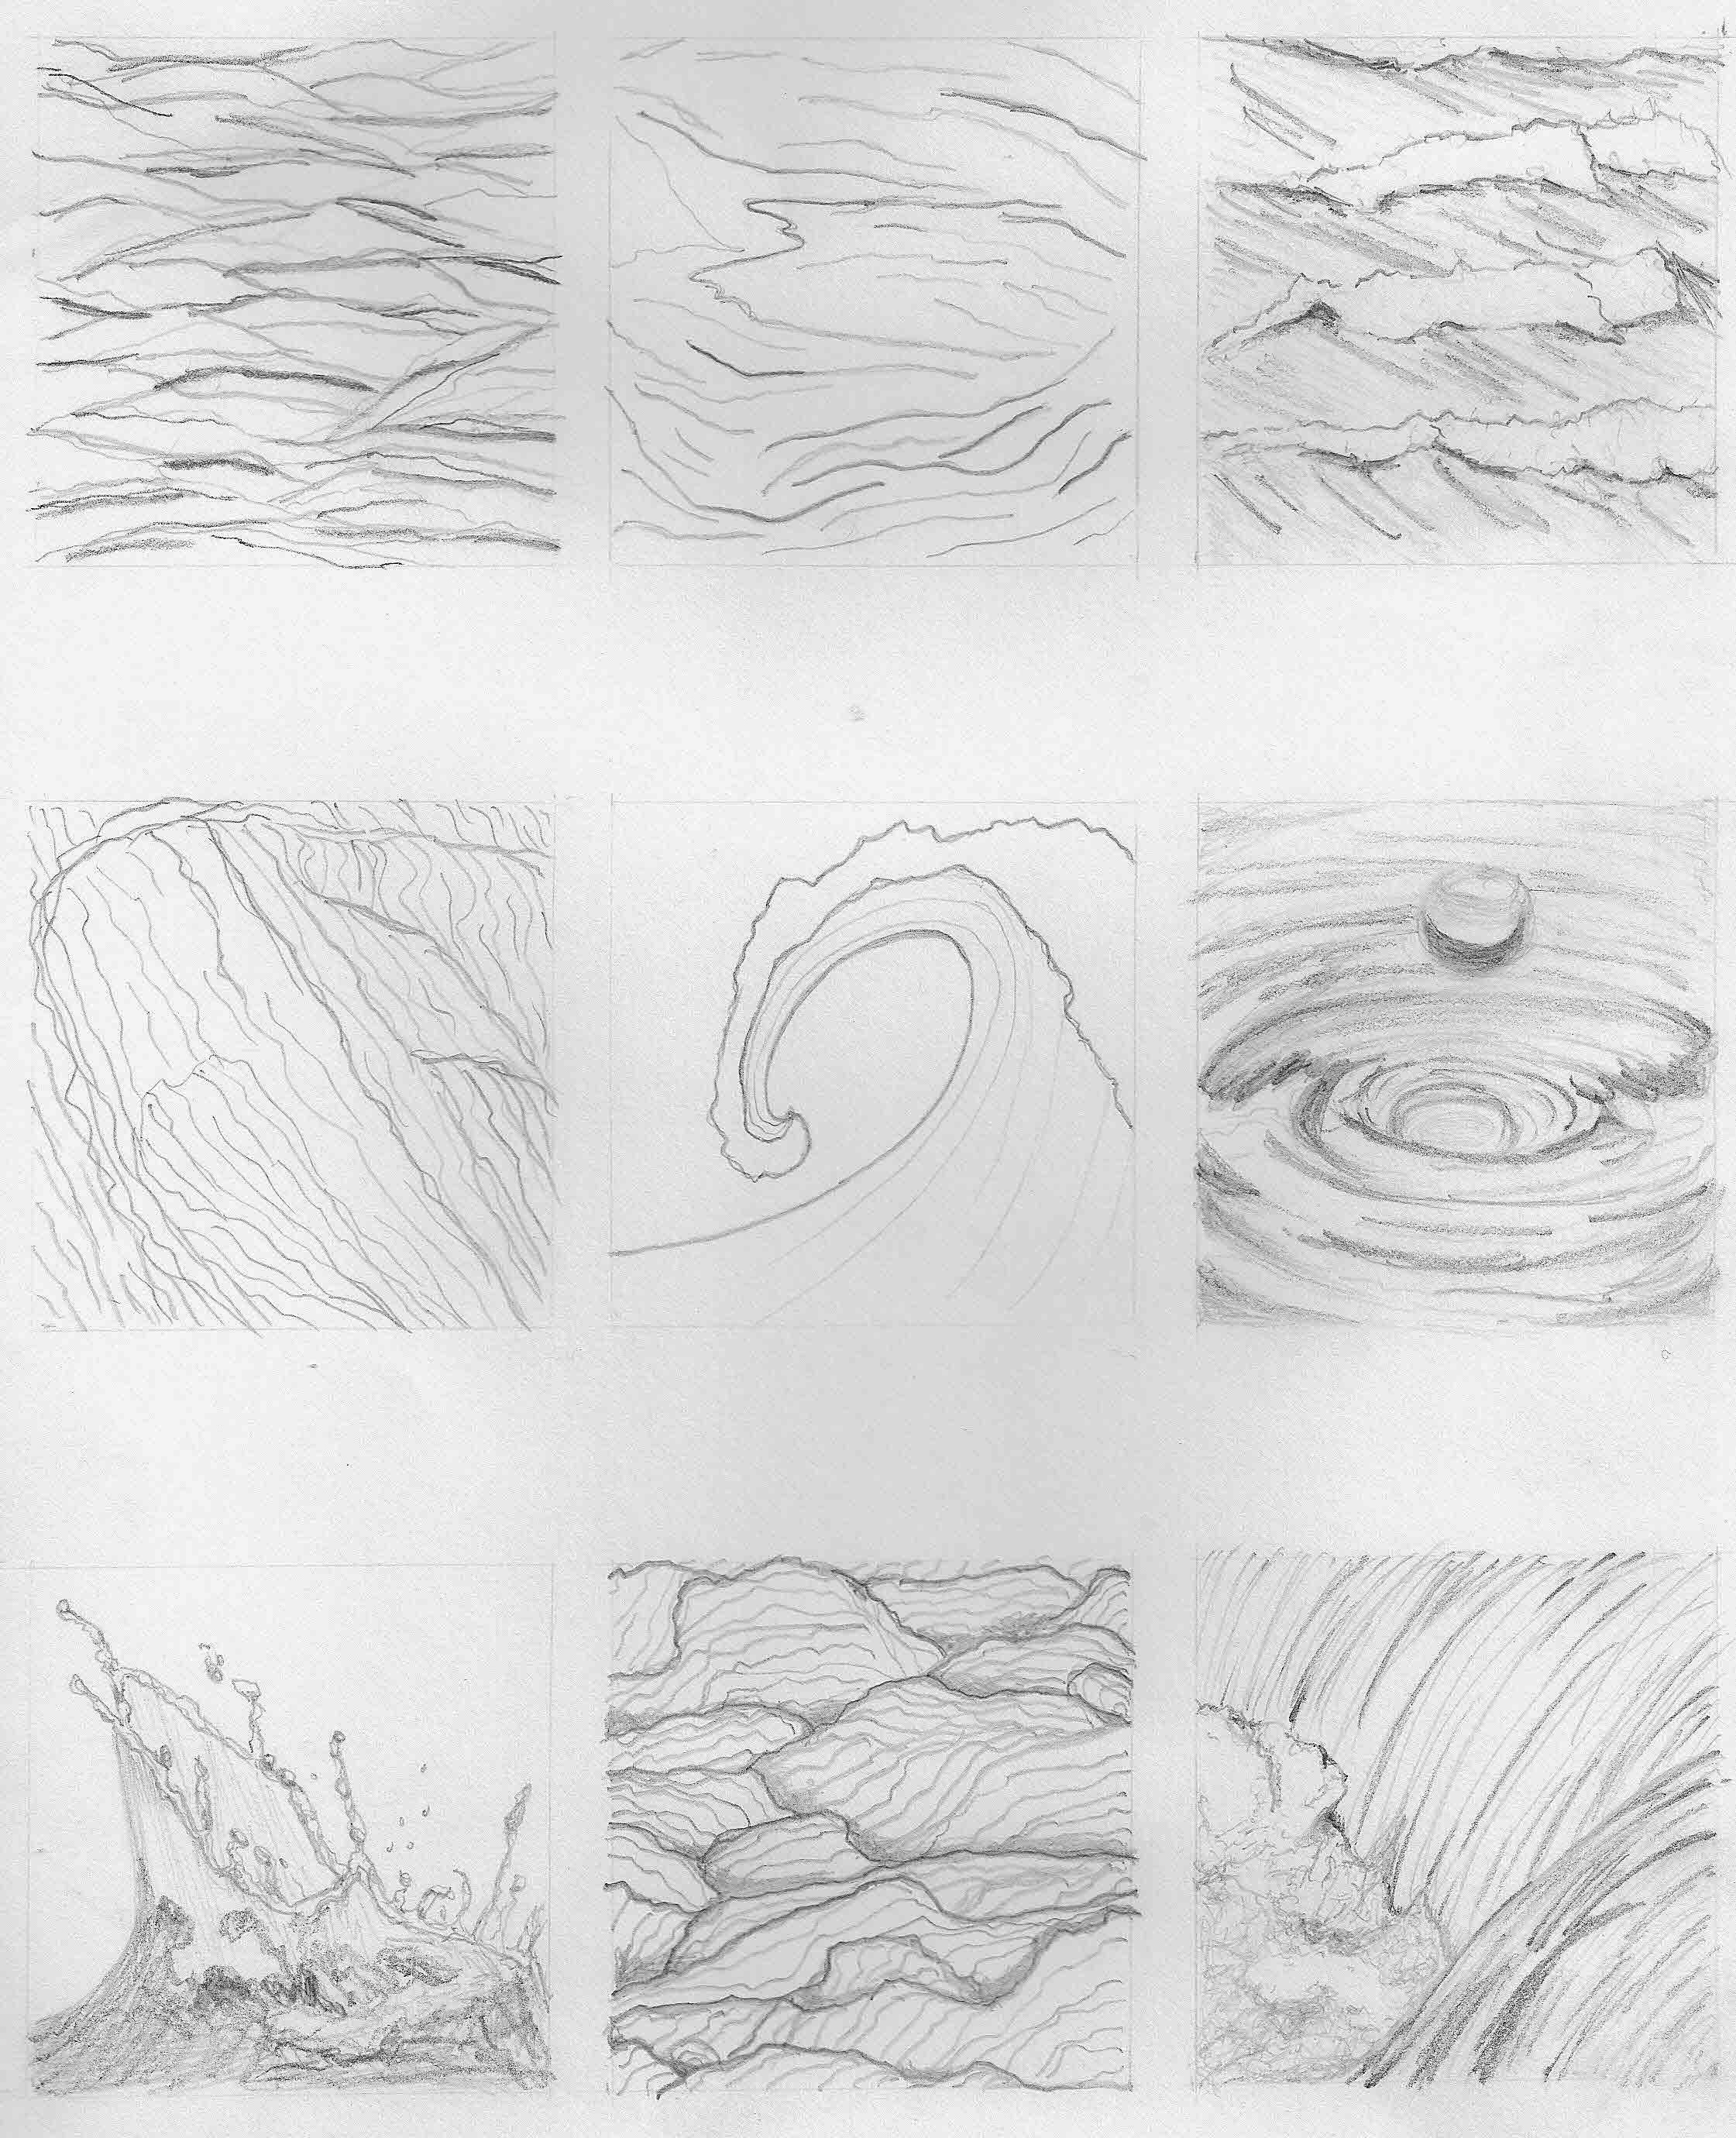 Nature Water Pencil Drawing. Sea Wave Art. Natural Art. - Etsy